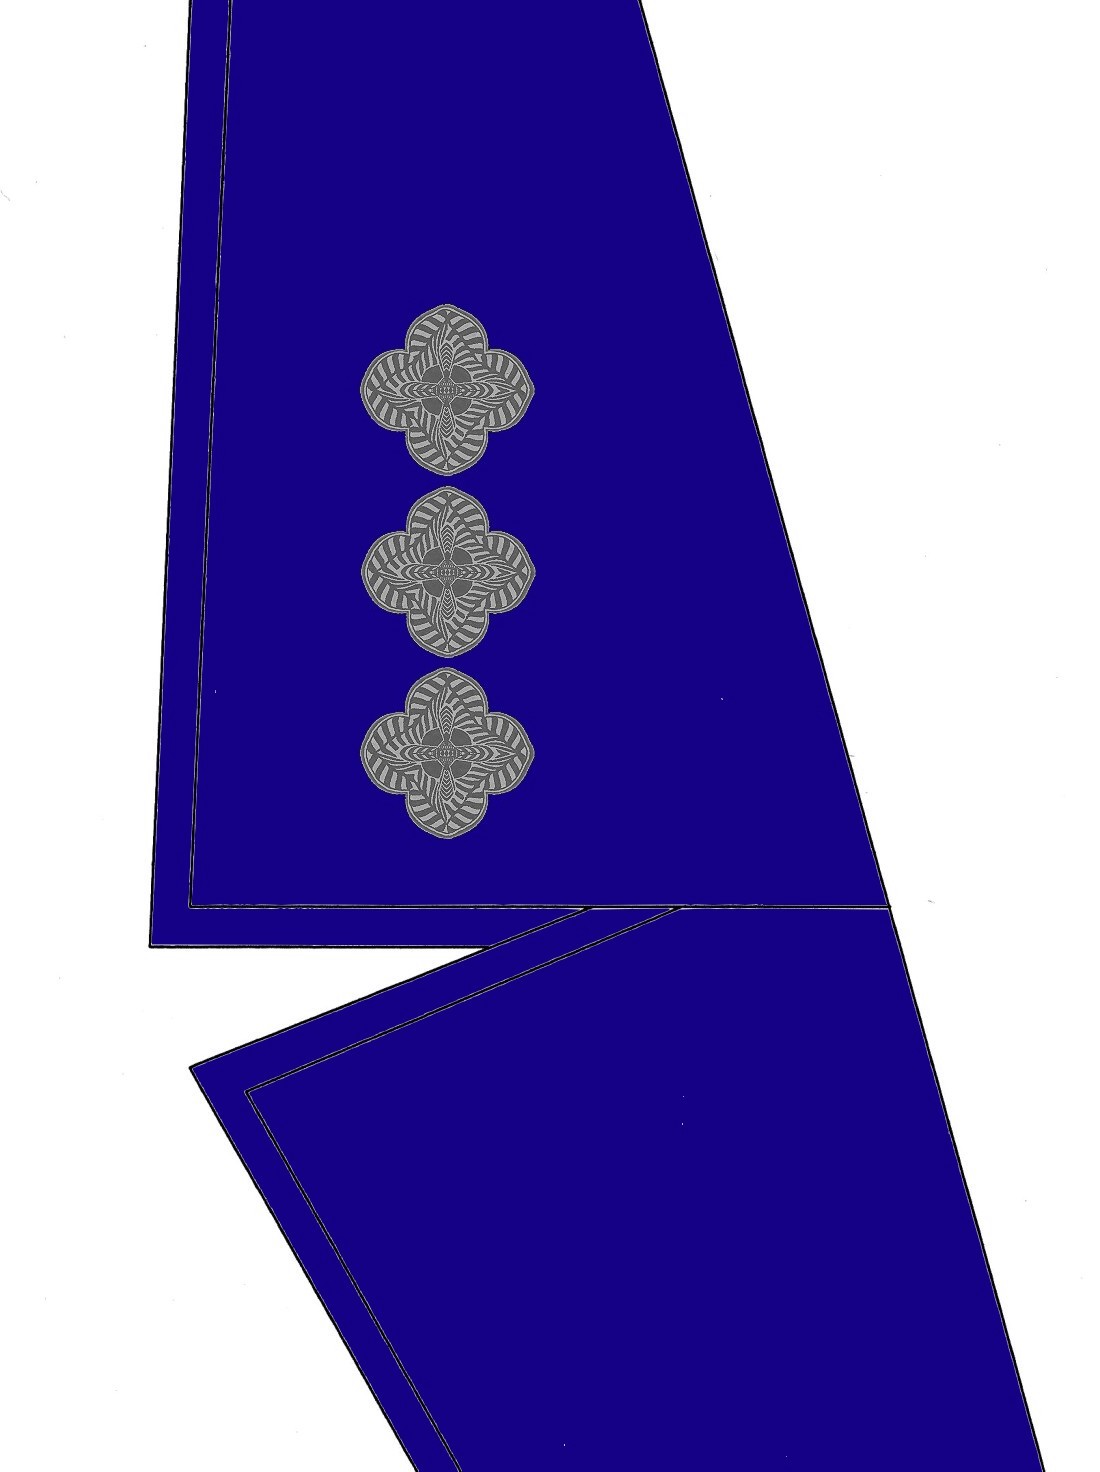 04-kragen-rangabzeichen-zugsfuehrer-hg-blau